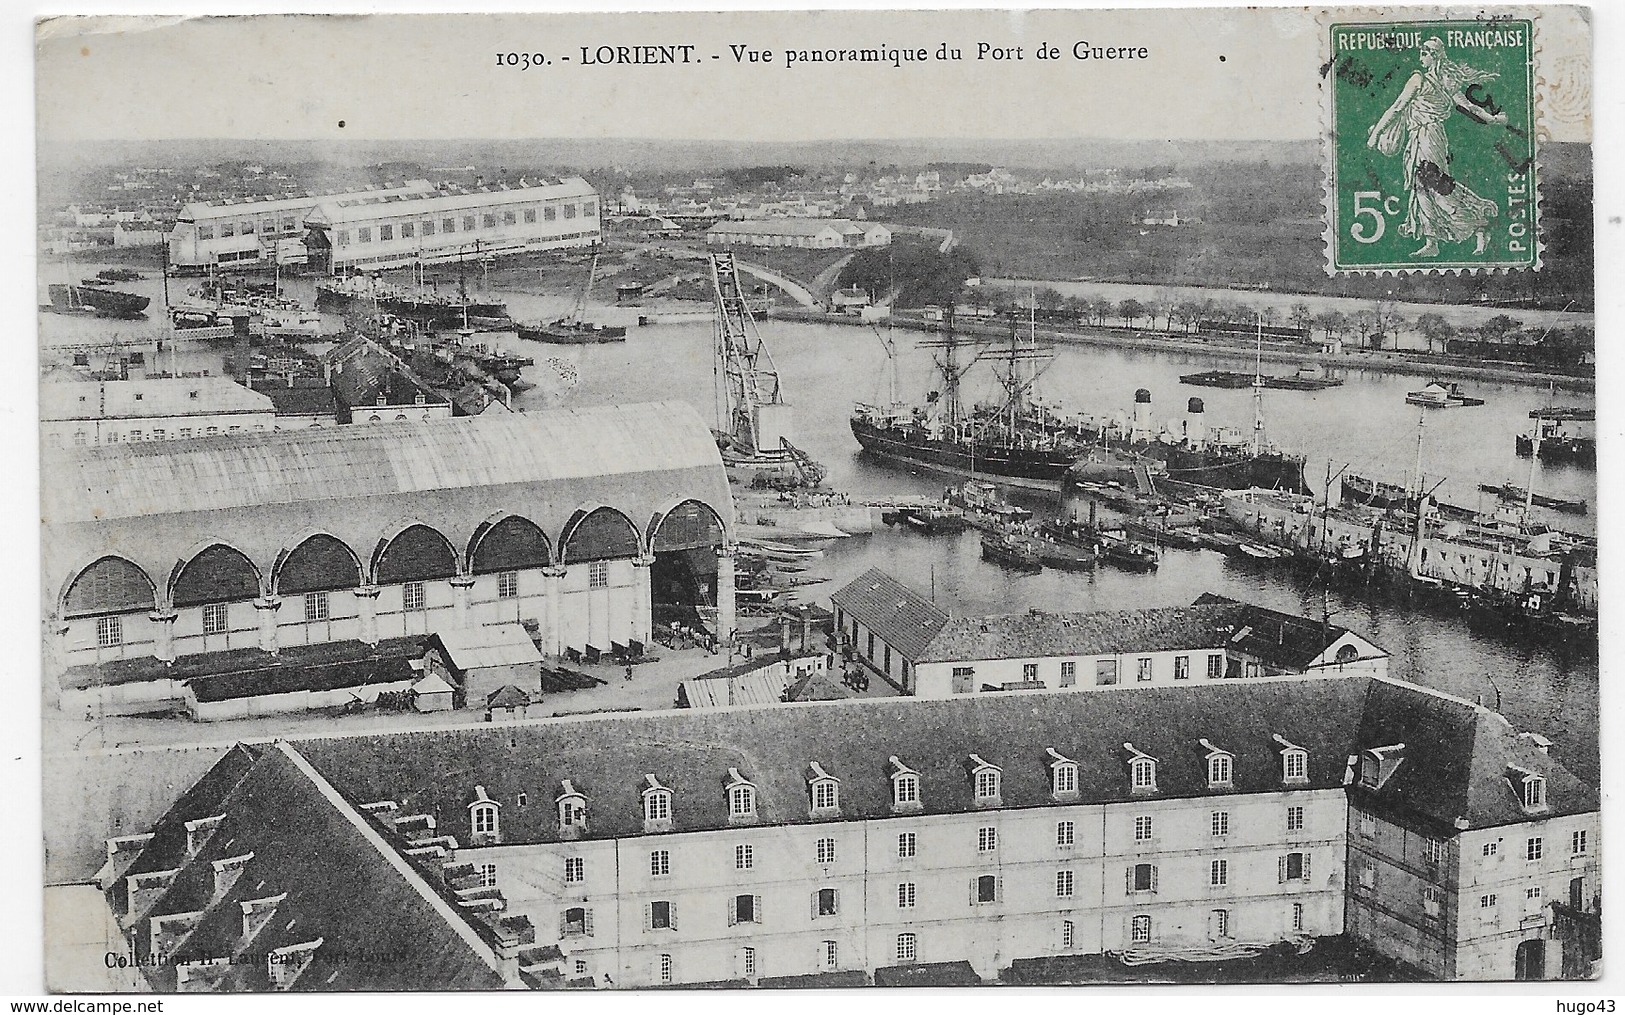 LORIENT EN 1909 - N° 1030 - VUE PANORAMIQUE DU PORT DE GUERRE - CPA VOYAGEE - Lorient